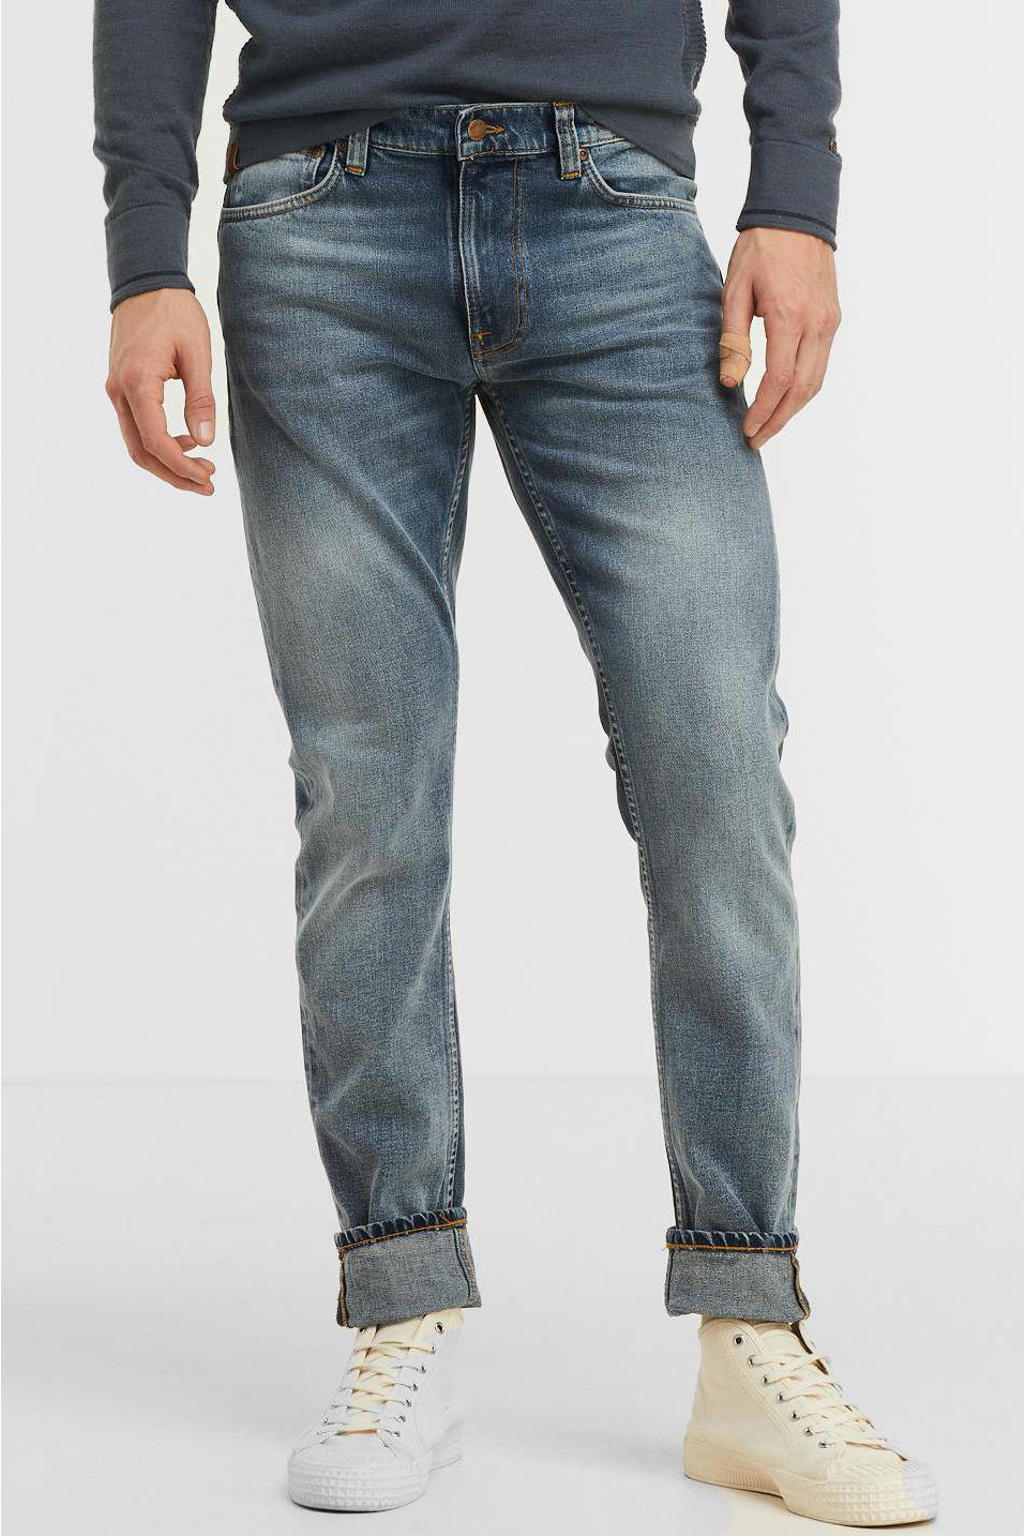 Nudie Jeans slim fit jeans Lean Dean gentle worn